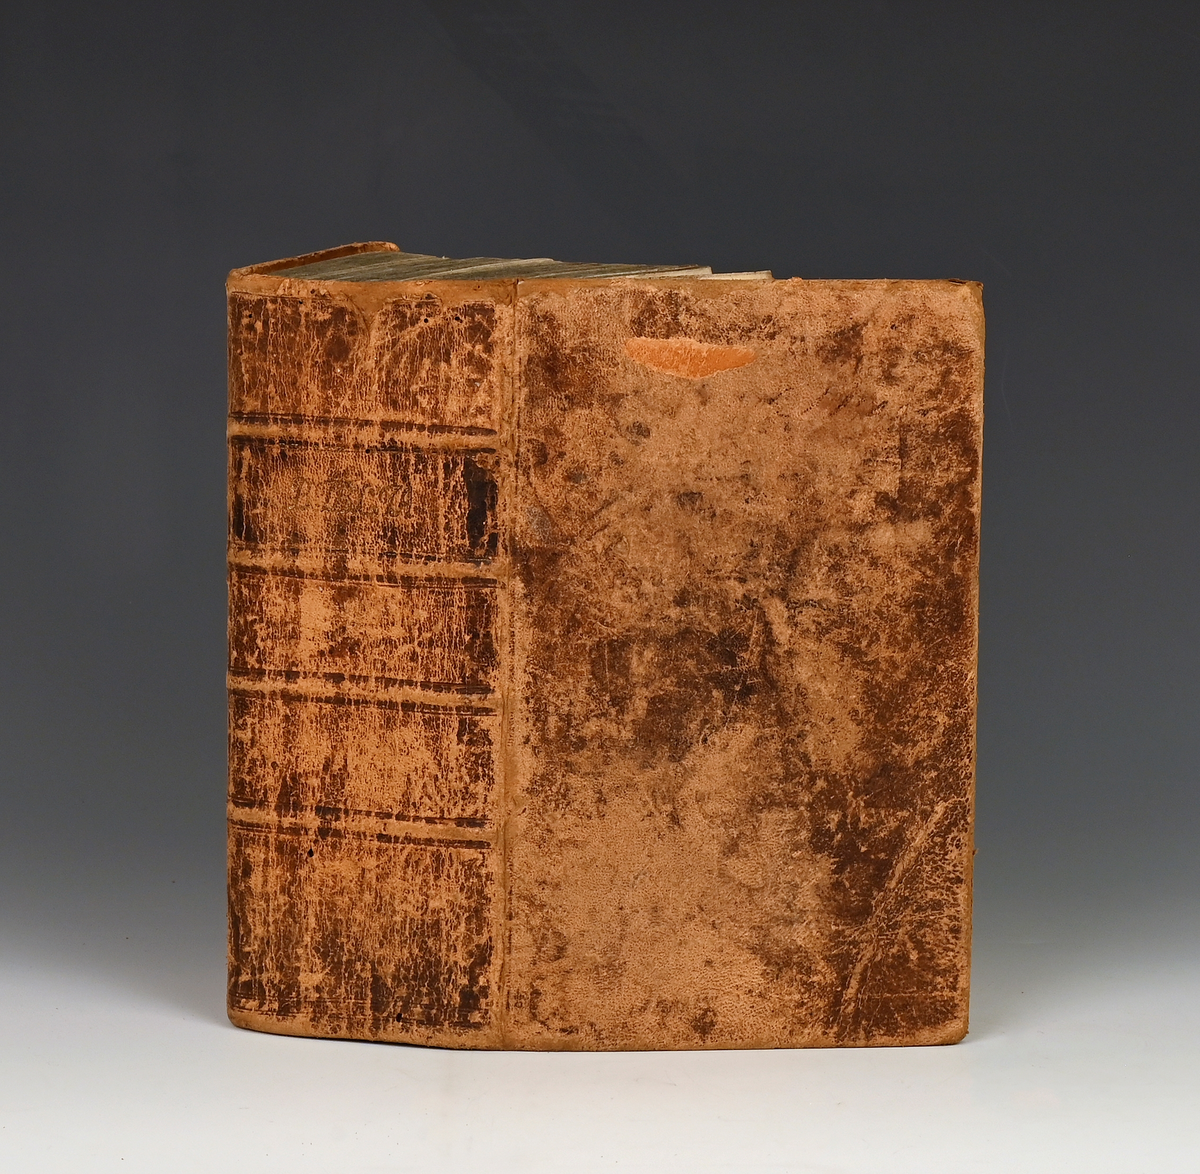 "Biblia, det er den ganske Hellige Skrifts Bøger,--". Sextende oplag. København 1819. 2 bl. + 1569 s. 8. Heillersbind.